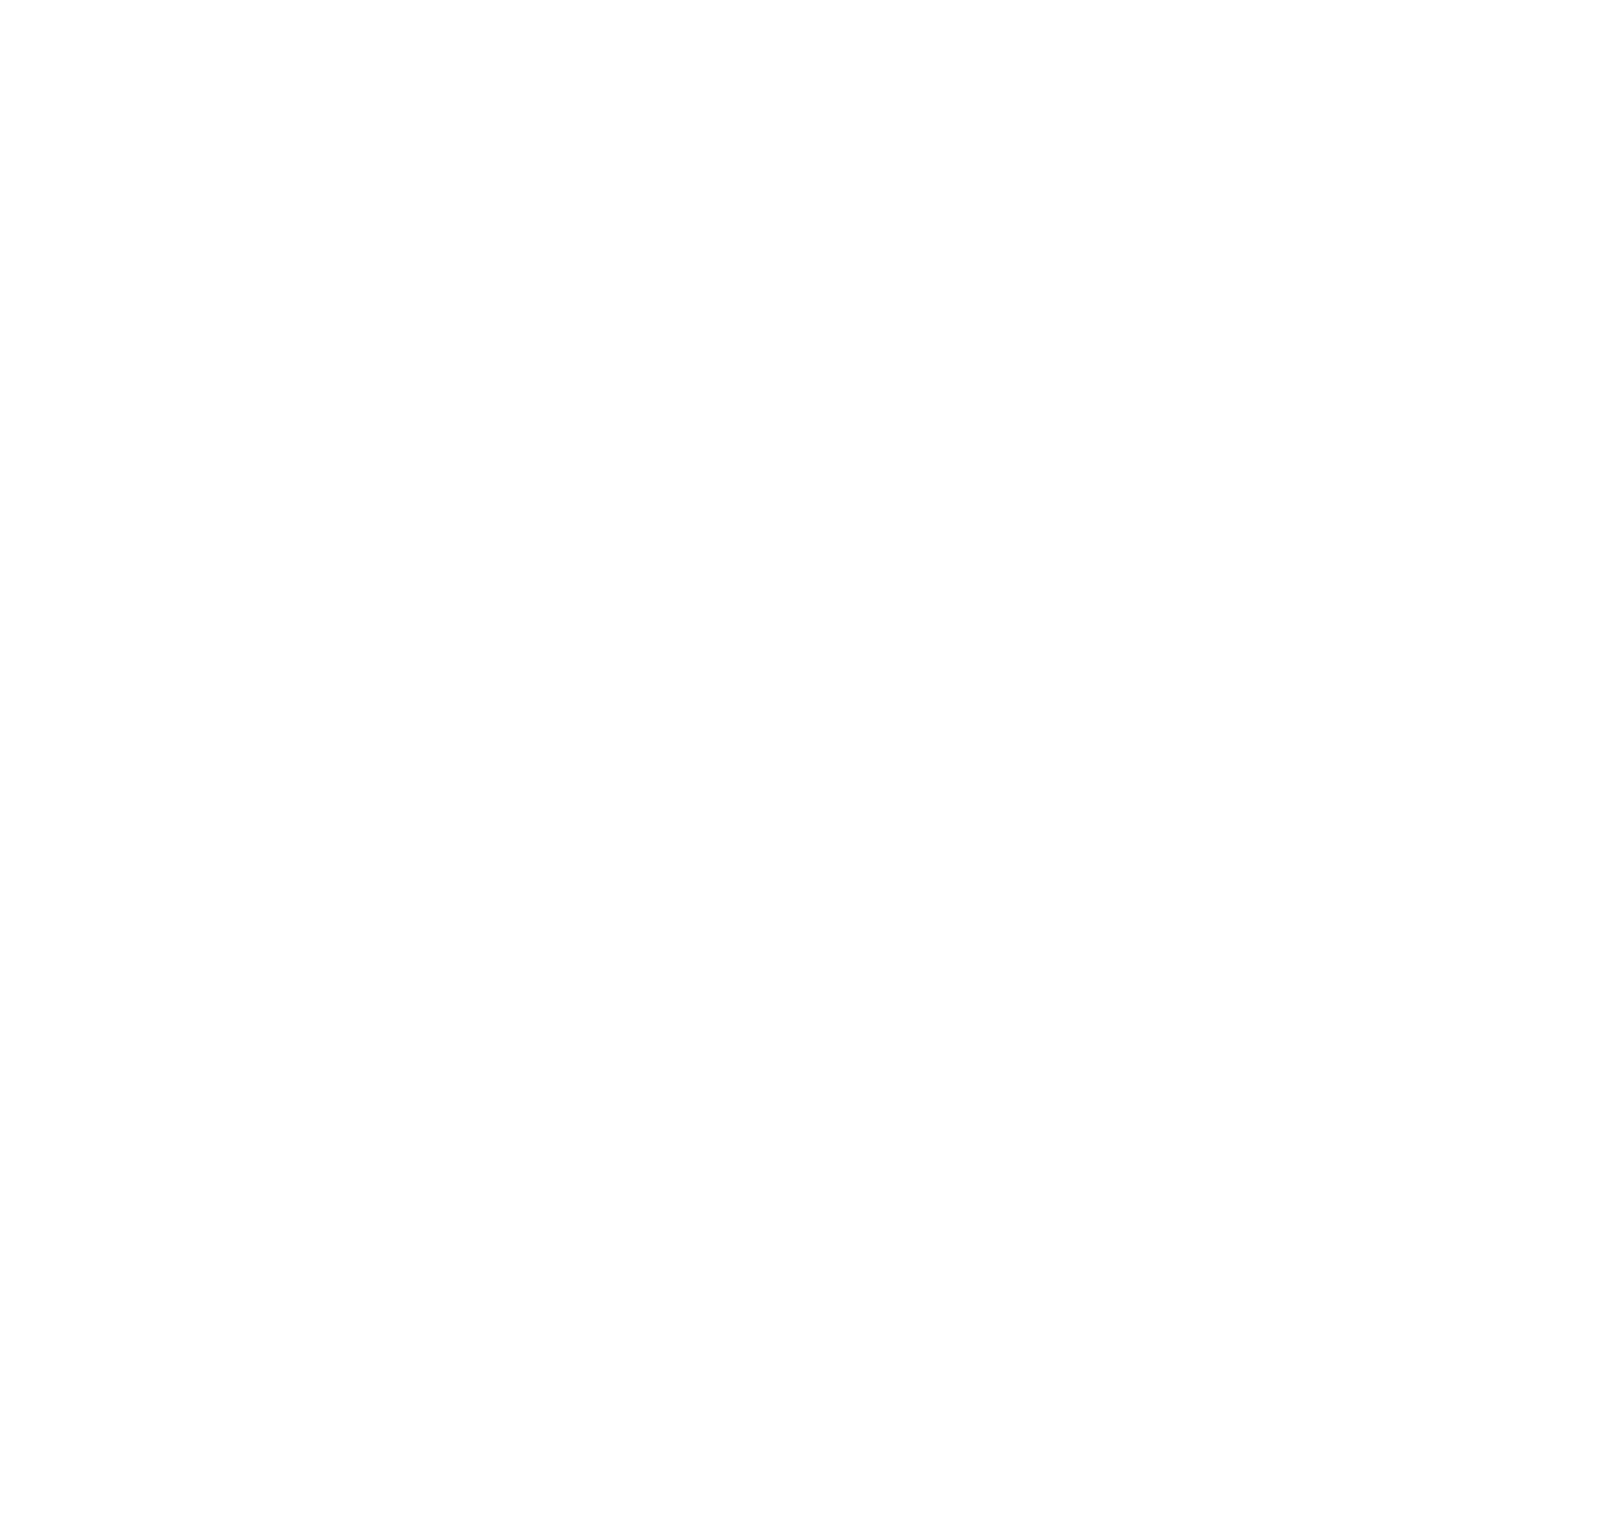 Similarweb logo for dark backgrounds (transparent PNG)